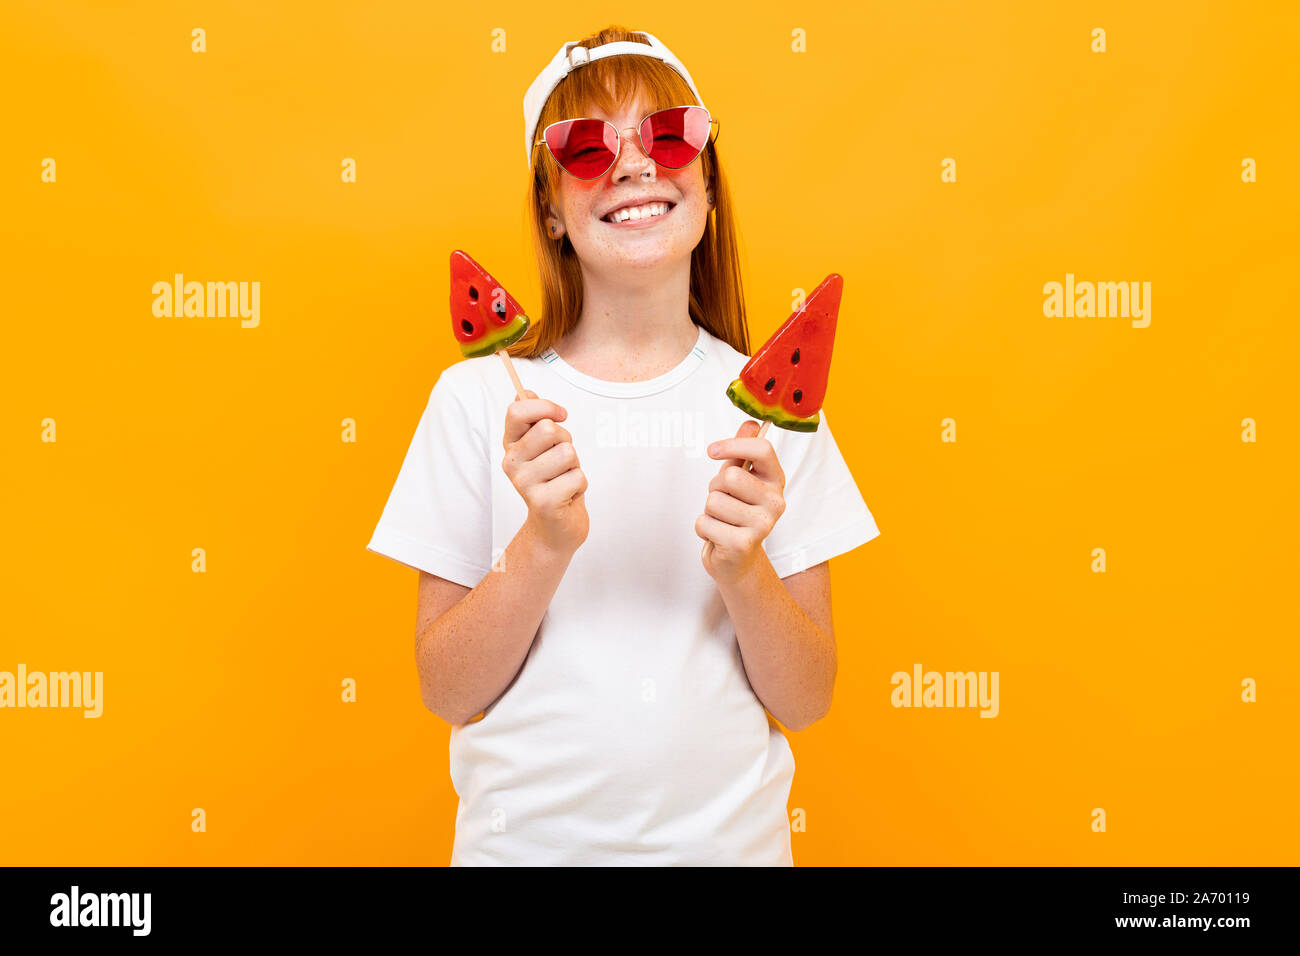 Belle jeune fille rousse dans un T-shirt blanc sur un arrière-plan d'un mur orange, immersive, portrait psychologique Banque D'Images